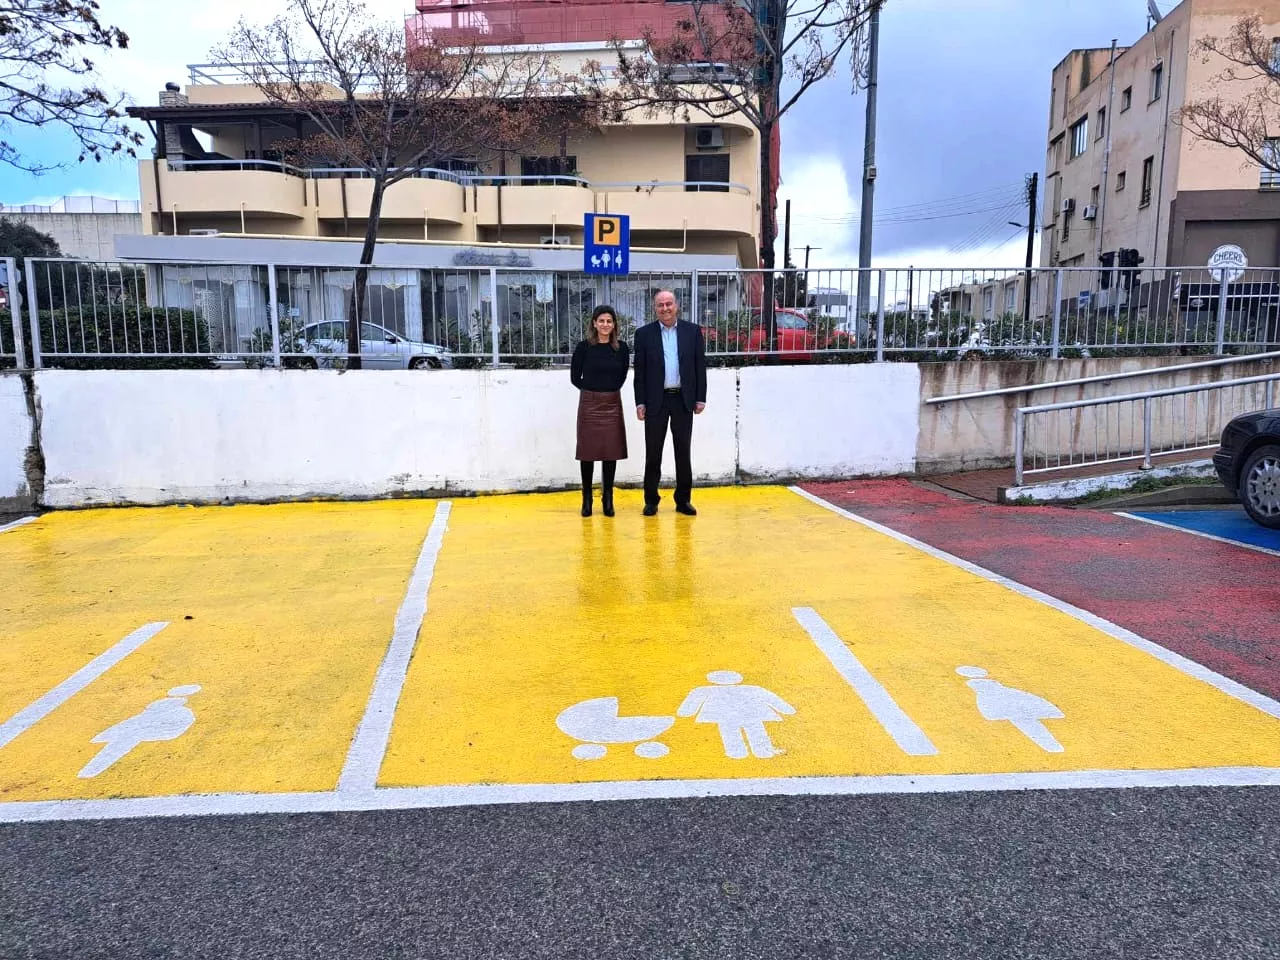 Ο Δήμος Λατσιών προσφέρει δωρεάν χώρους στάθμευσης για οικογένειες που έχουν βρέφη και παιδικά καρότσια.